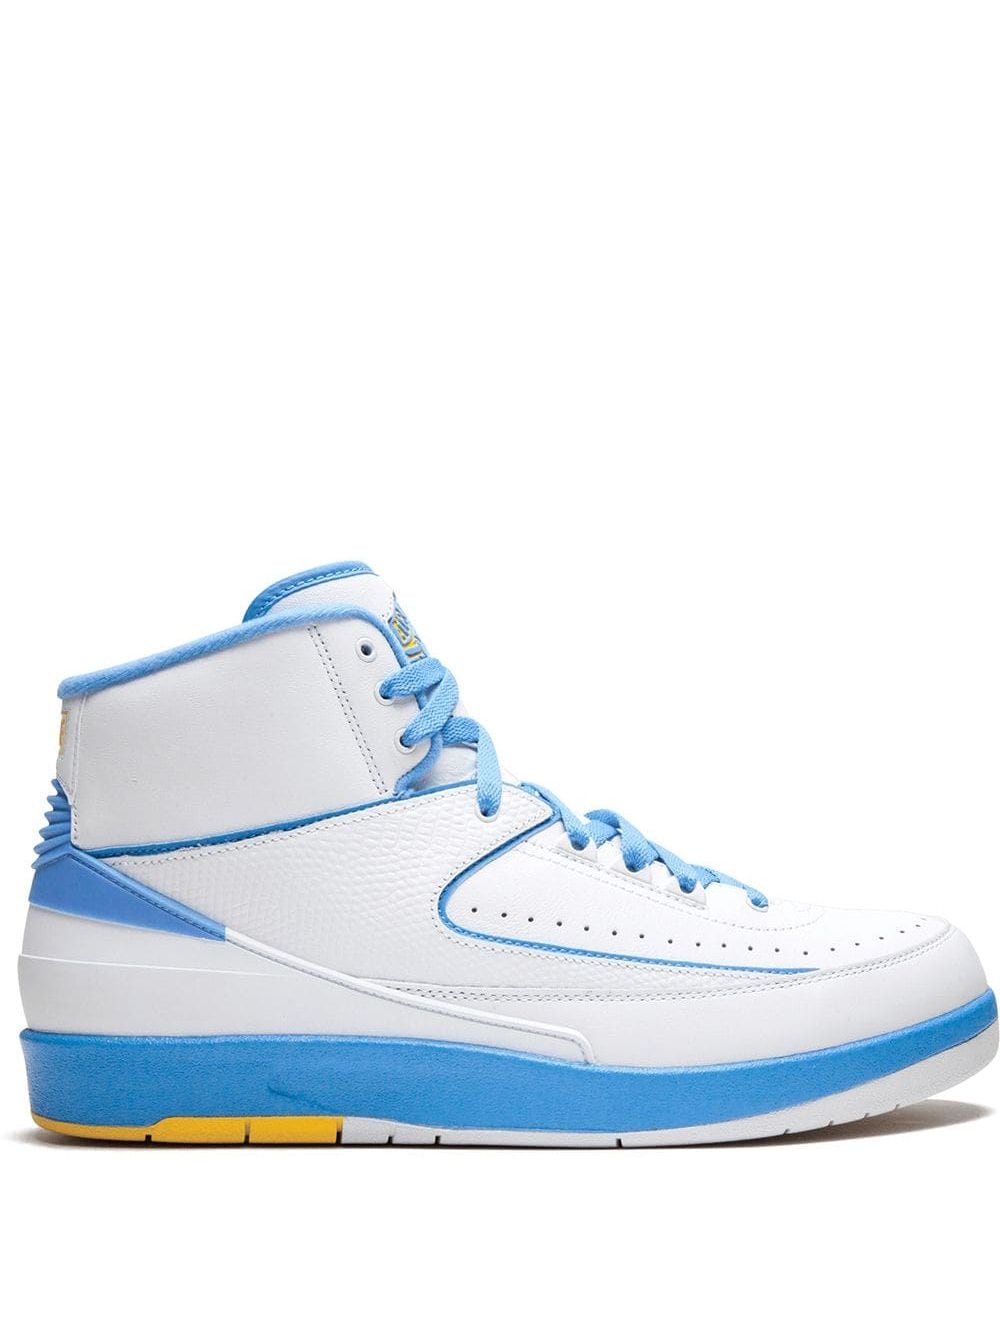 Jordan Air Jordan Retro 2 "Melo" sneakers - White